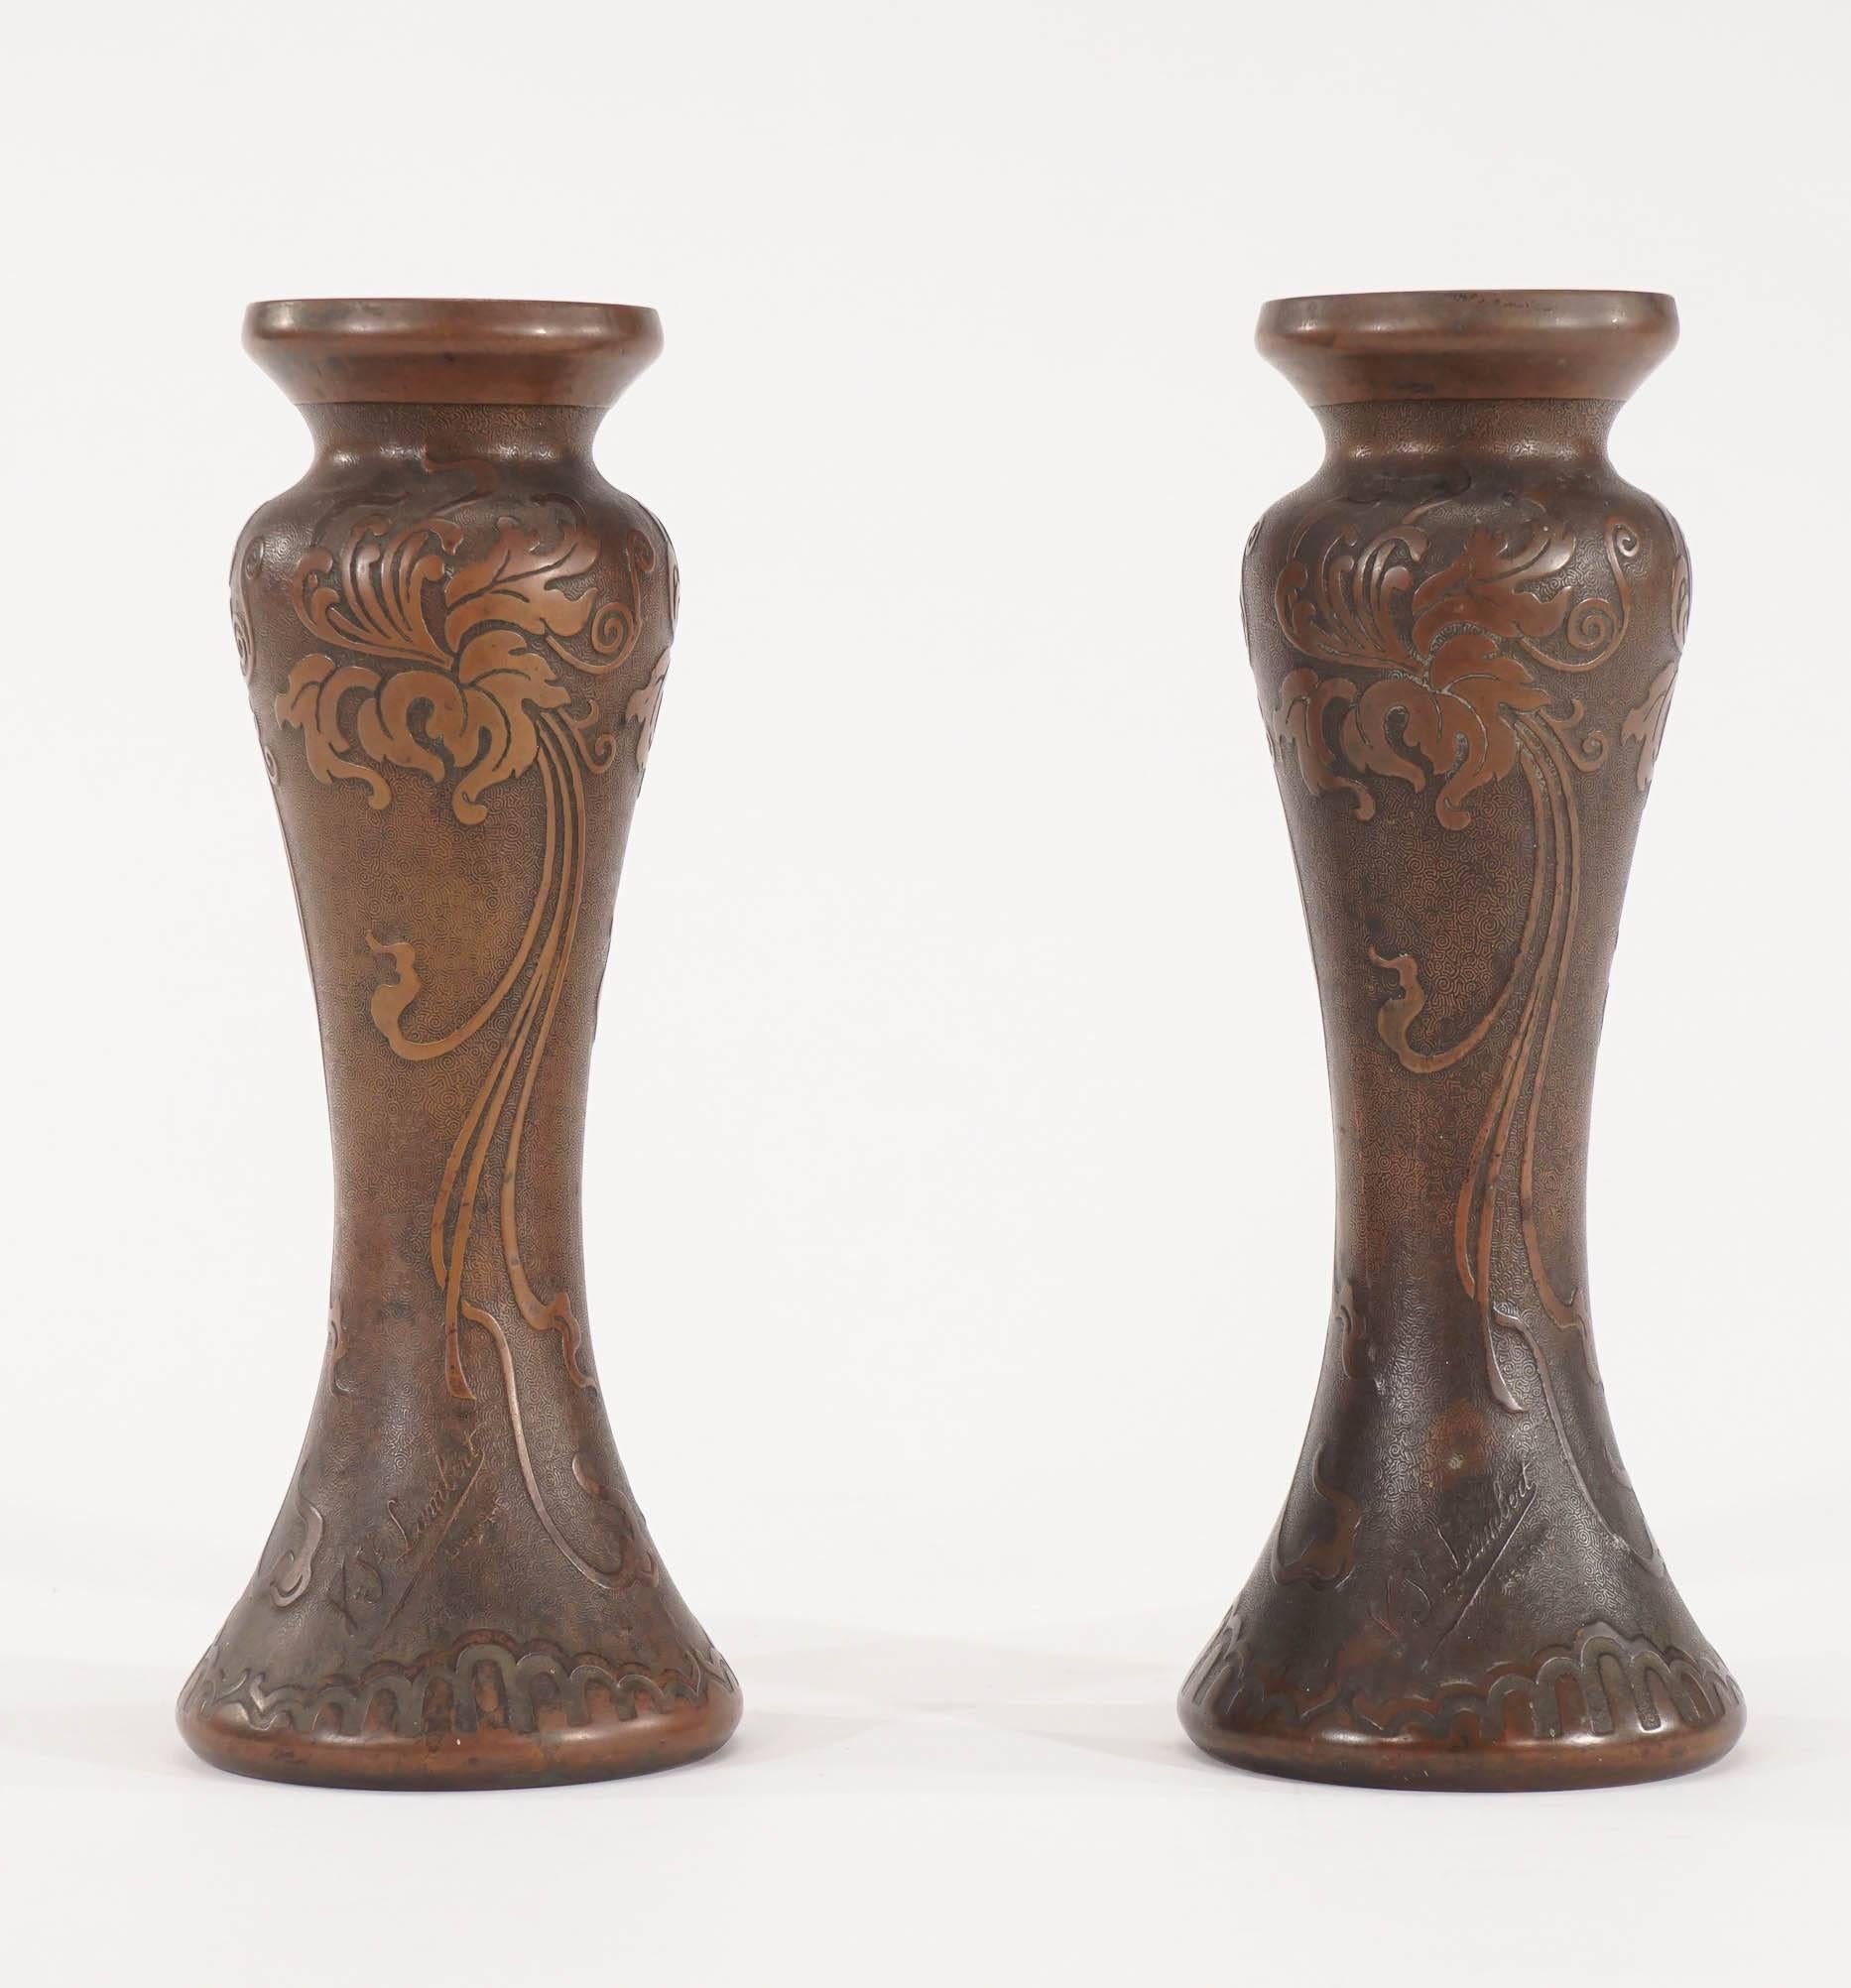 Ein hübsches Paar signierter Vasen aus mundgeblasenem Amethystkristall von Val Saint Lambert, die mit einer vergoldeten Bronzepatina überzogen sind. Der Korpus ist mit einem Hochrelief verziert, das Schwertlilien in reinen Jugendstil-Motiven